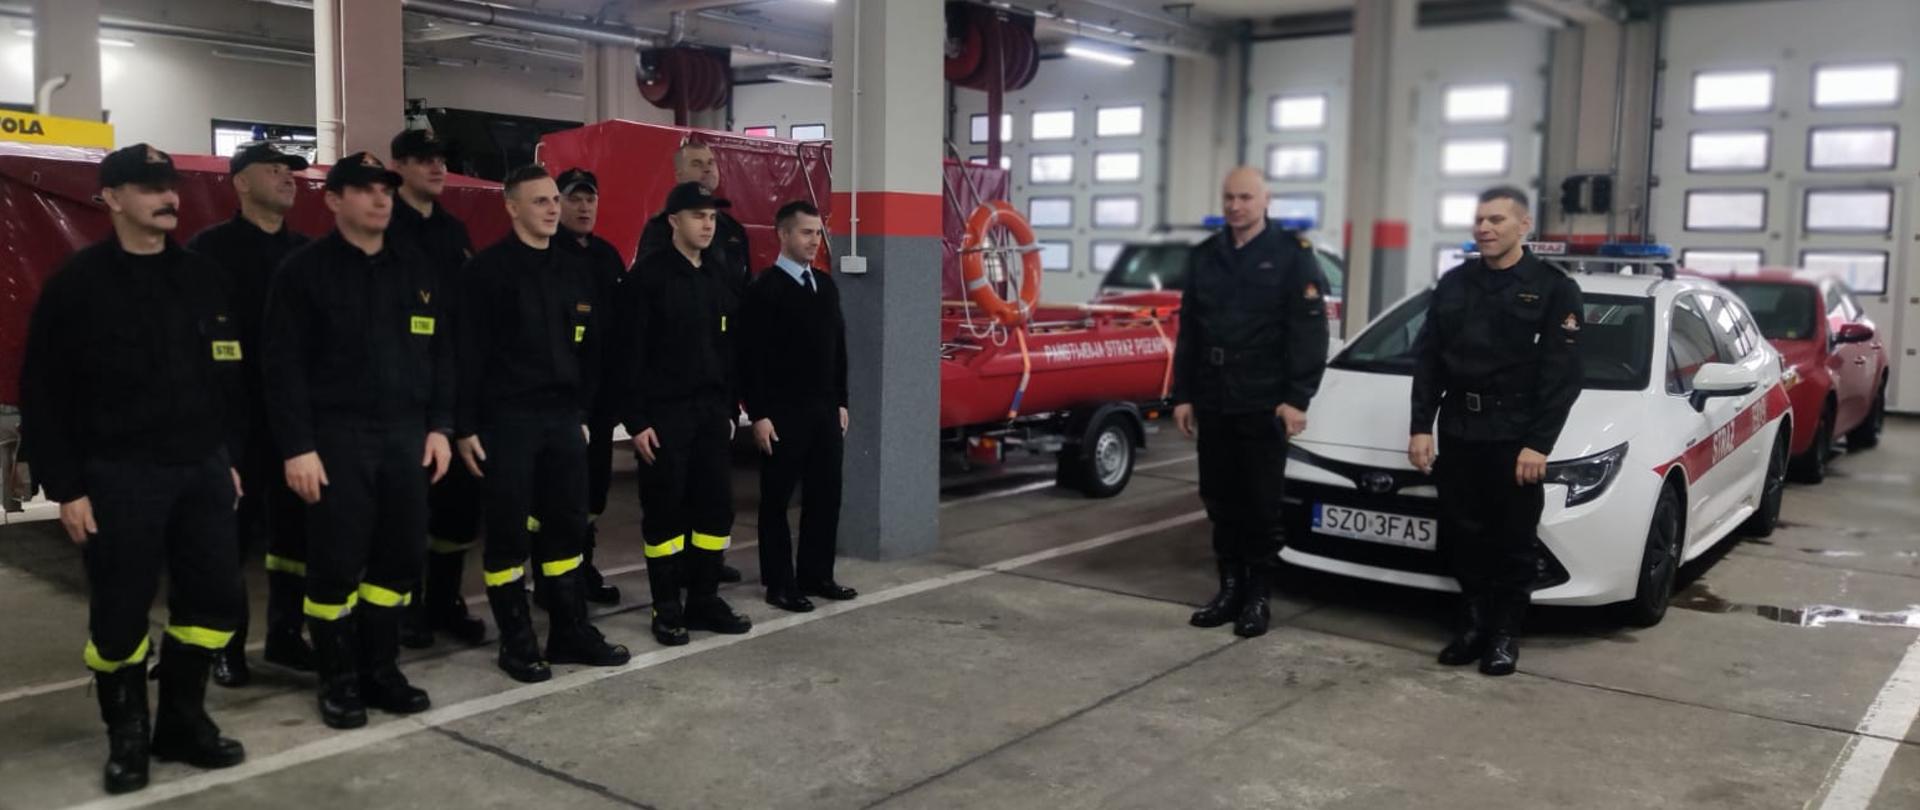 Po lewej stronie zdjęcia strażacy stojący w dwuszeregu na garażu. Za nimi samochody pożarnicze oraz inny sprzęt strażacki. Na środku dwóch strażaków stoi poza szeregiem.